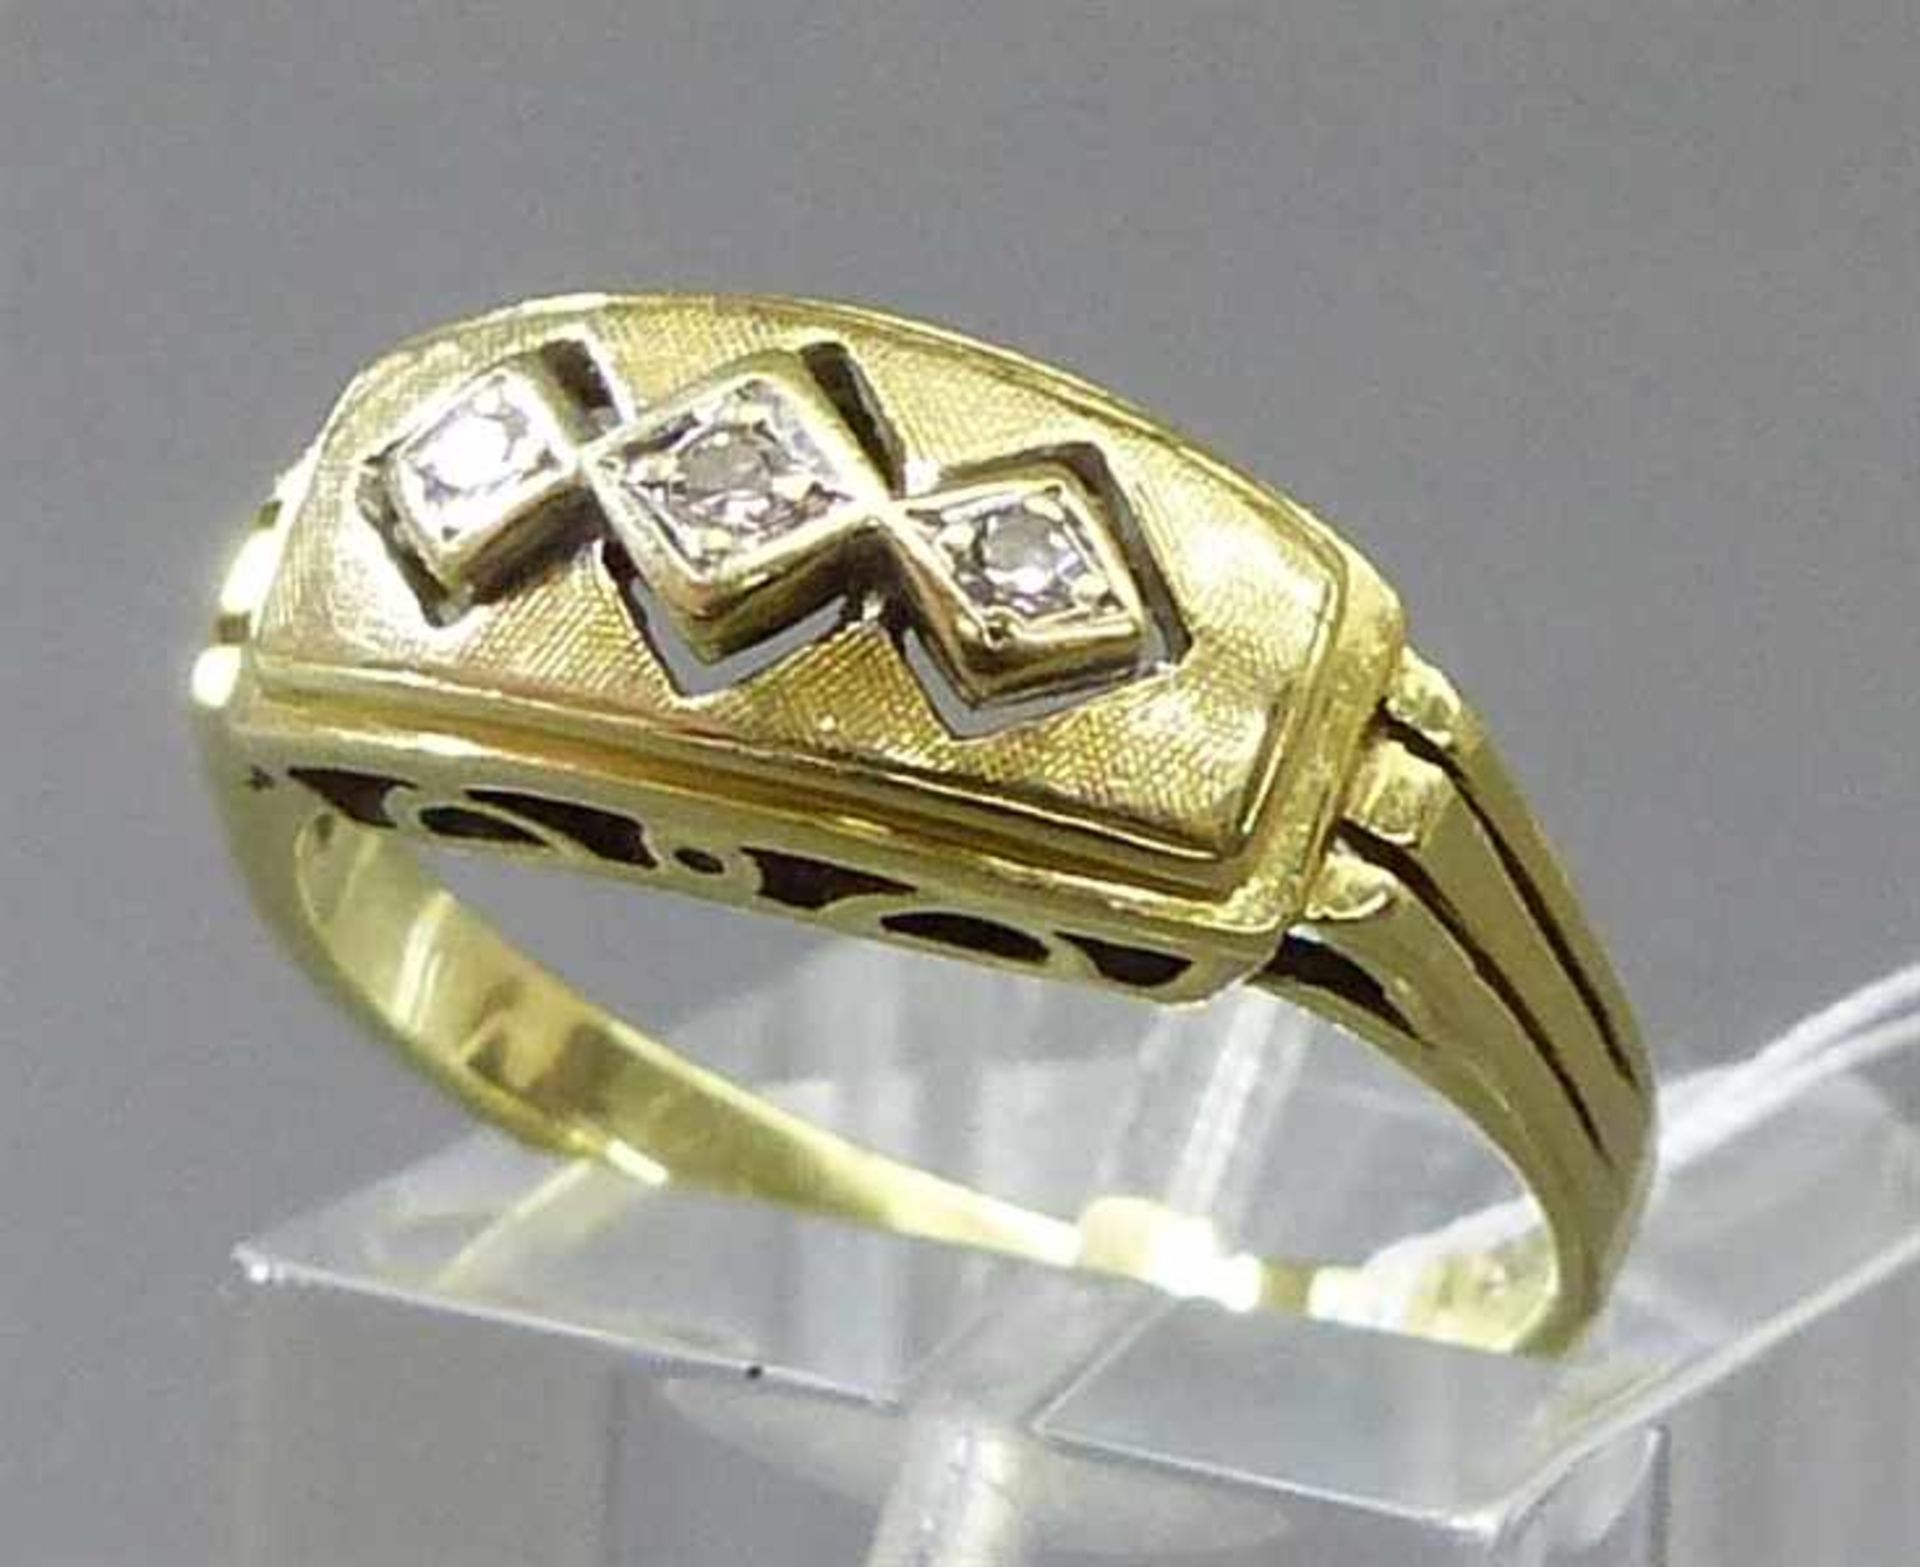 Damenring, um 190014 kt. Gelbgold, 3 kleine Diamanten,durchbrochen gearbeitet, teilweise mattiert,